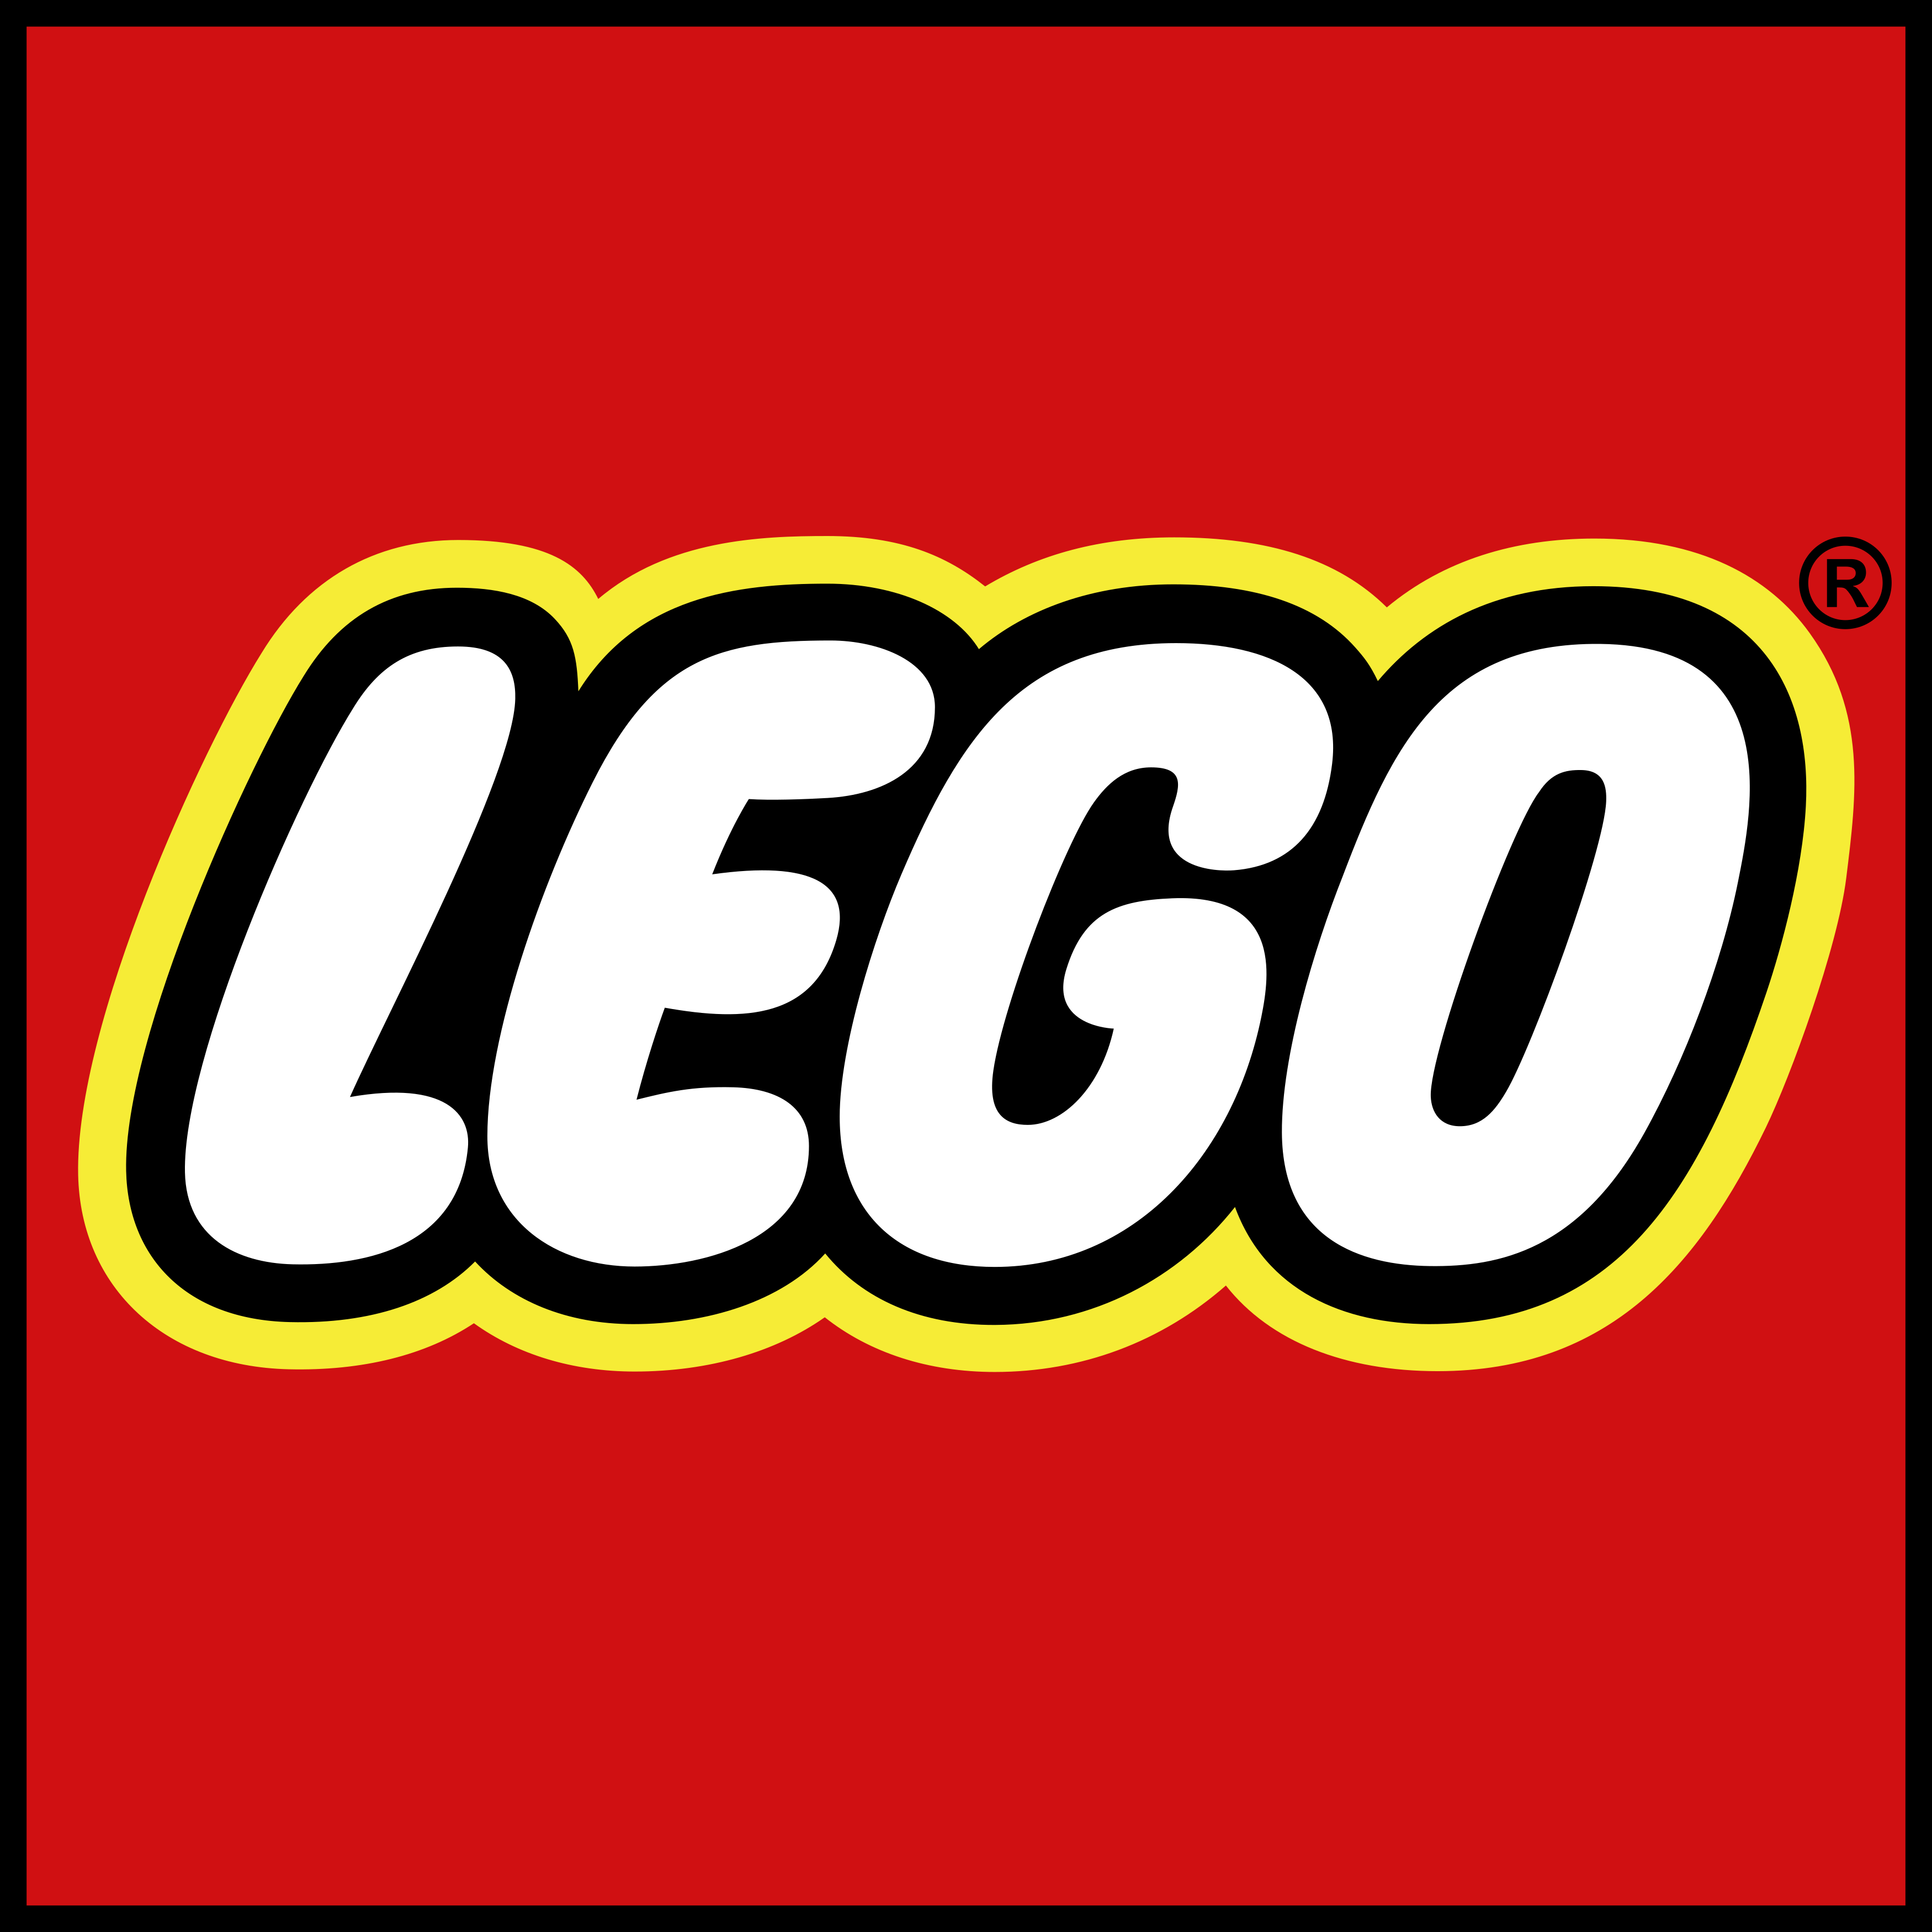 LEGO Gutschein